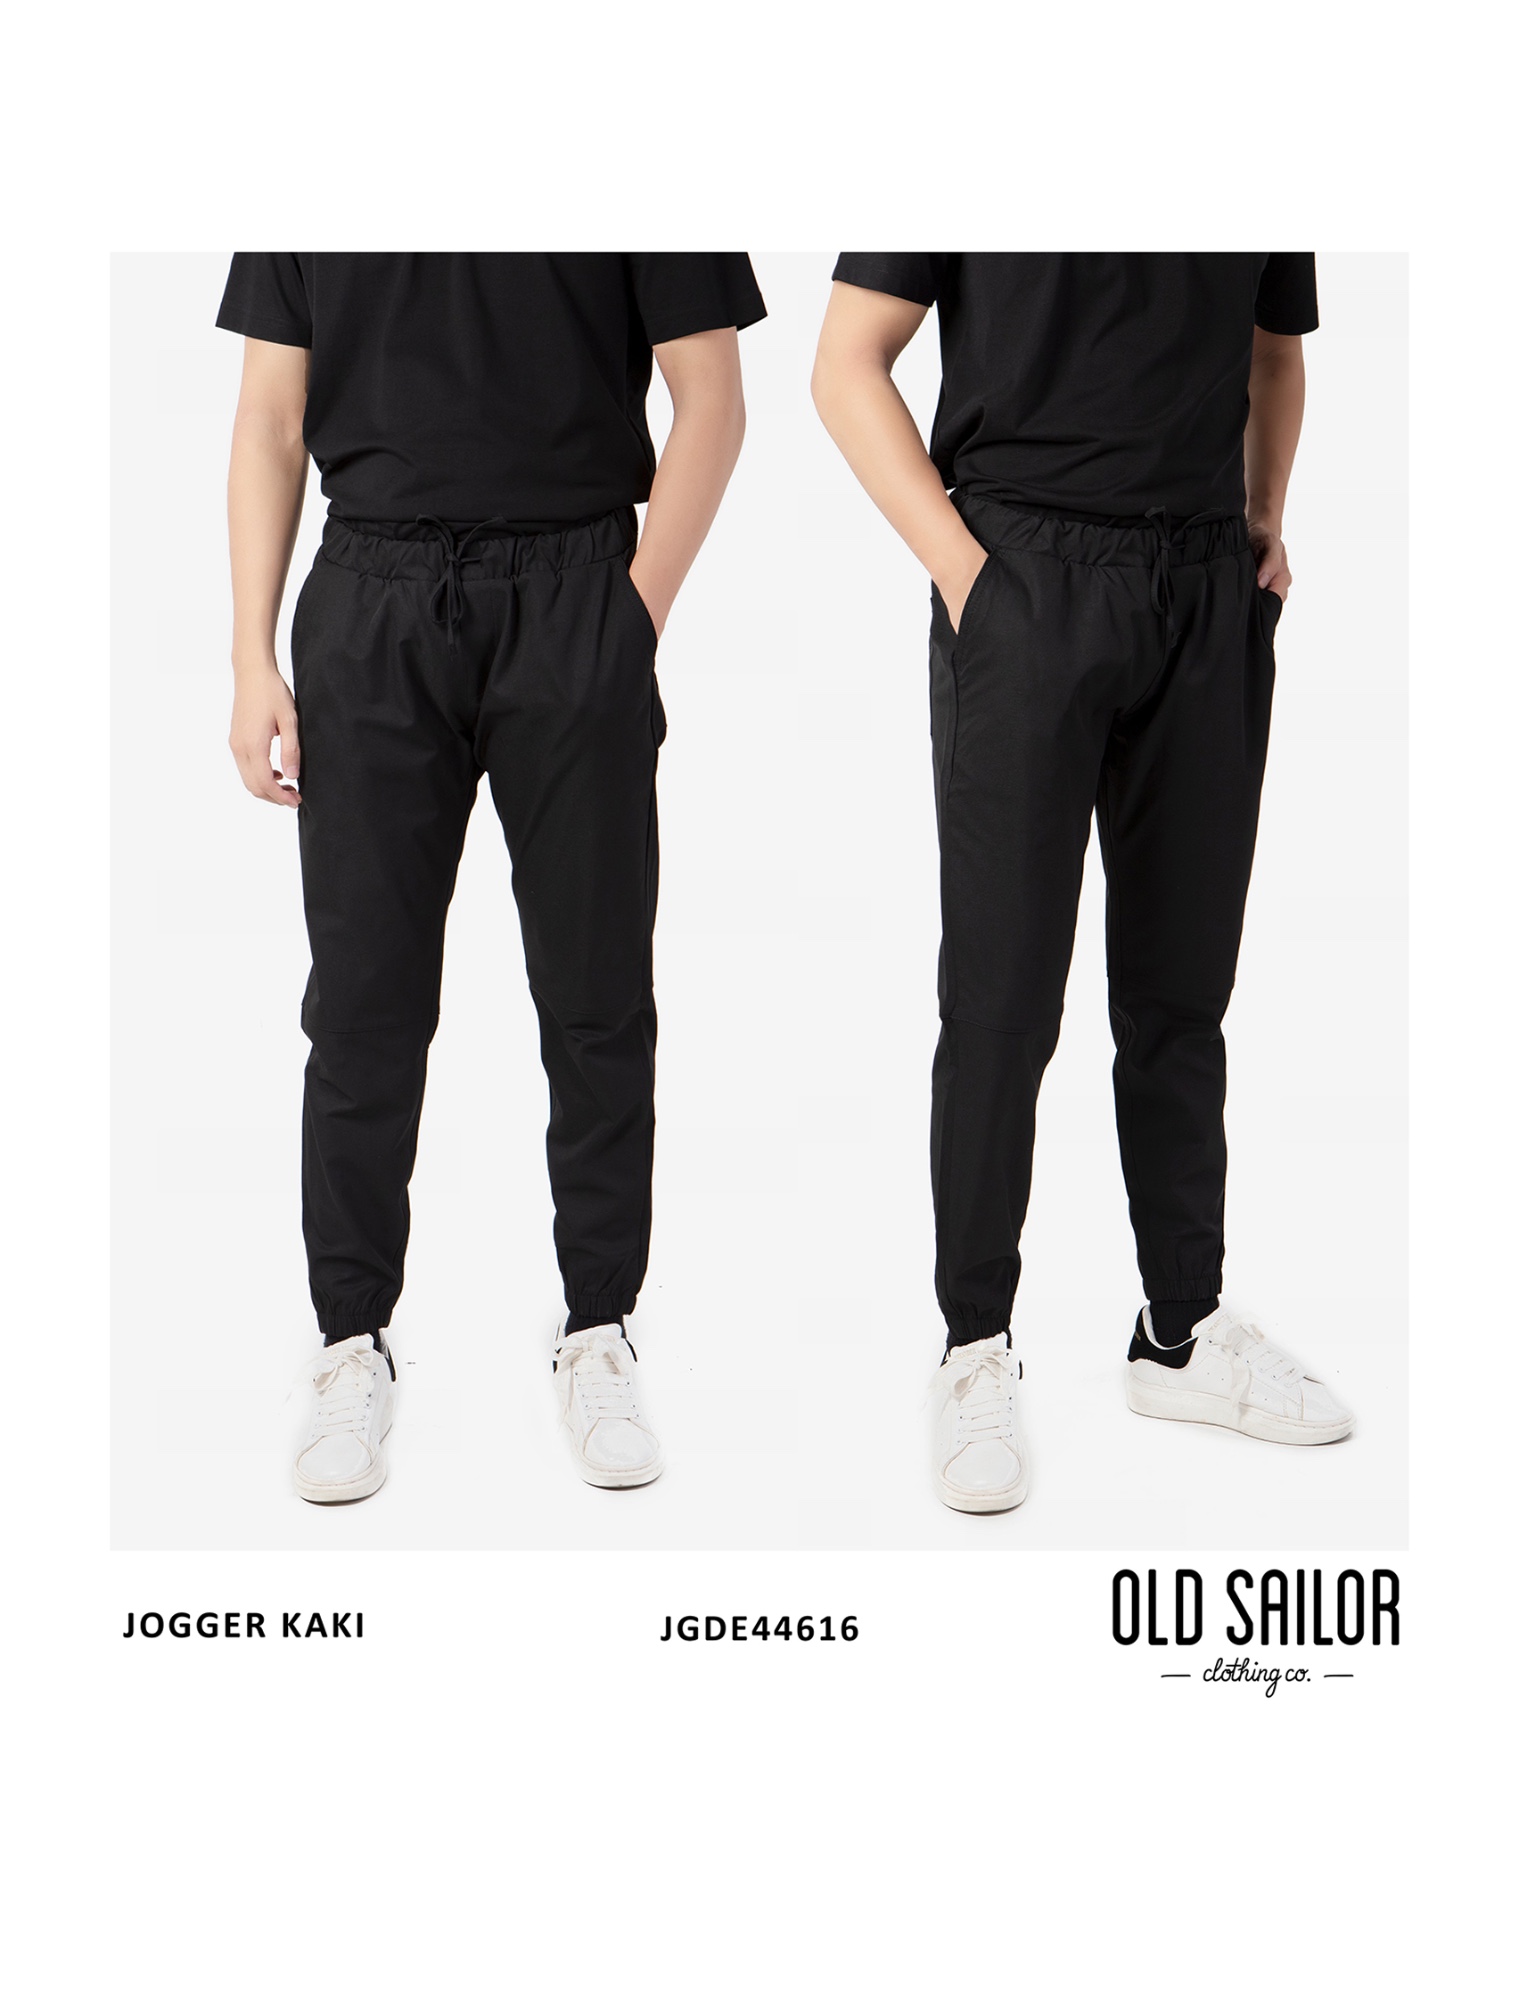 Quần Jogger kaki Old Sailor - O.S.L KAKI JOGGER - BLACK JGDE446161 - đen - big size upto 4XL